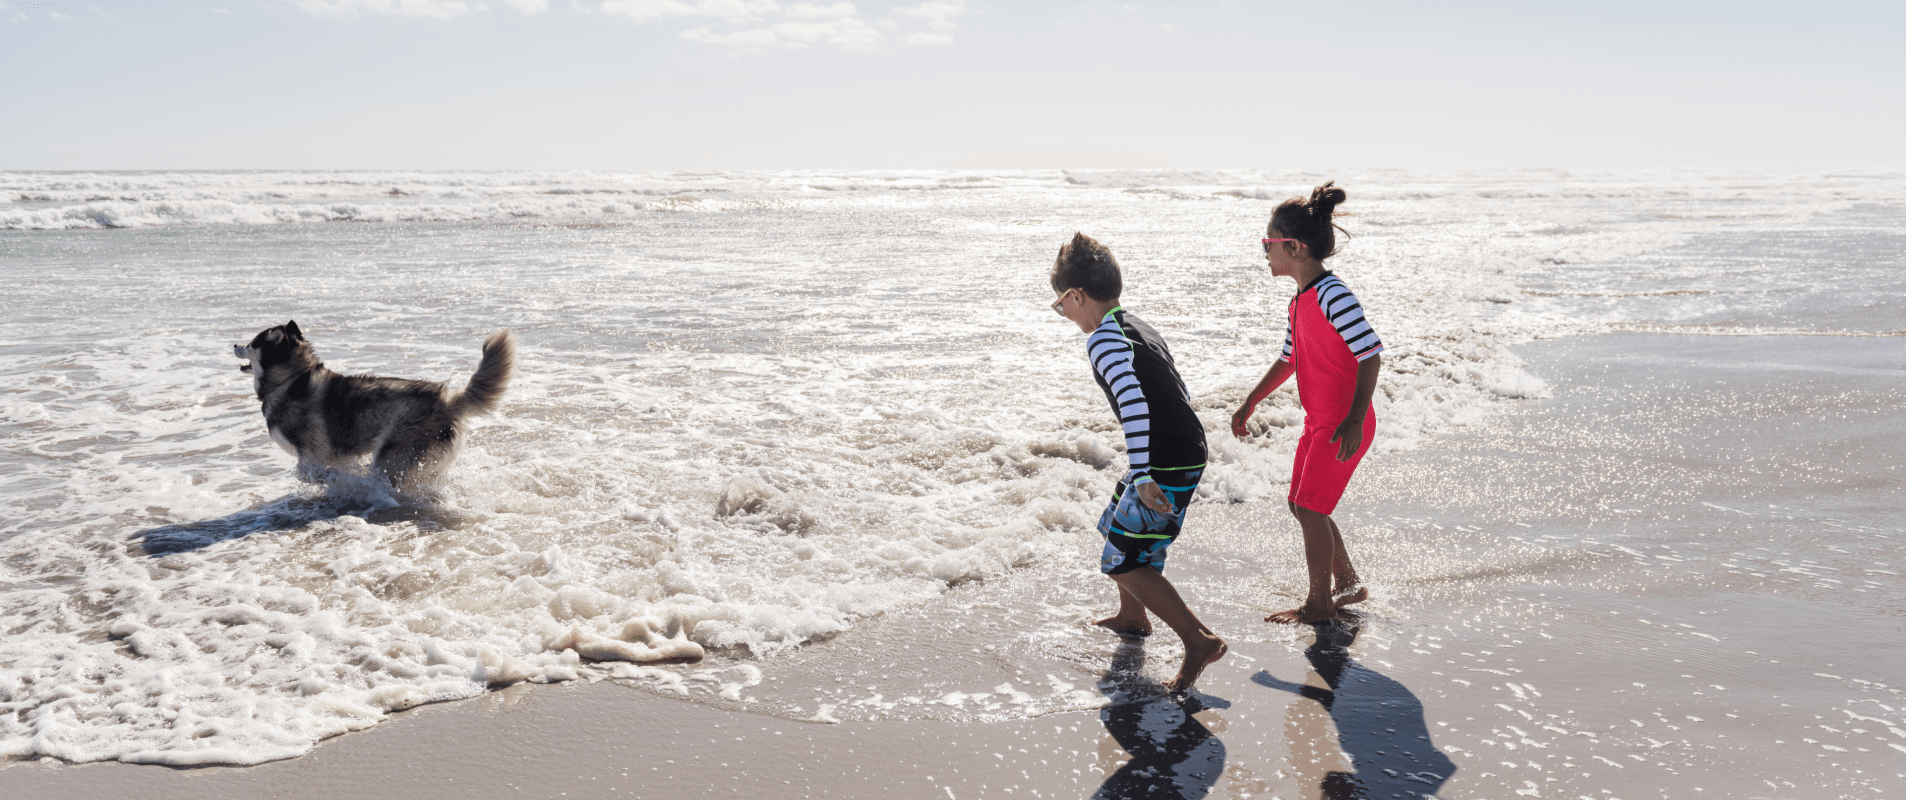 Поход на пляж: как правильно собрать ребенка?